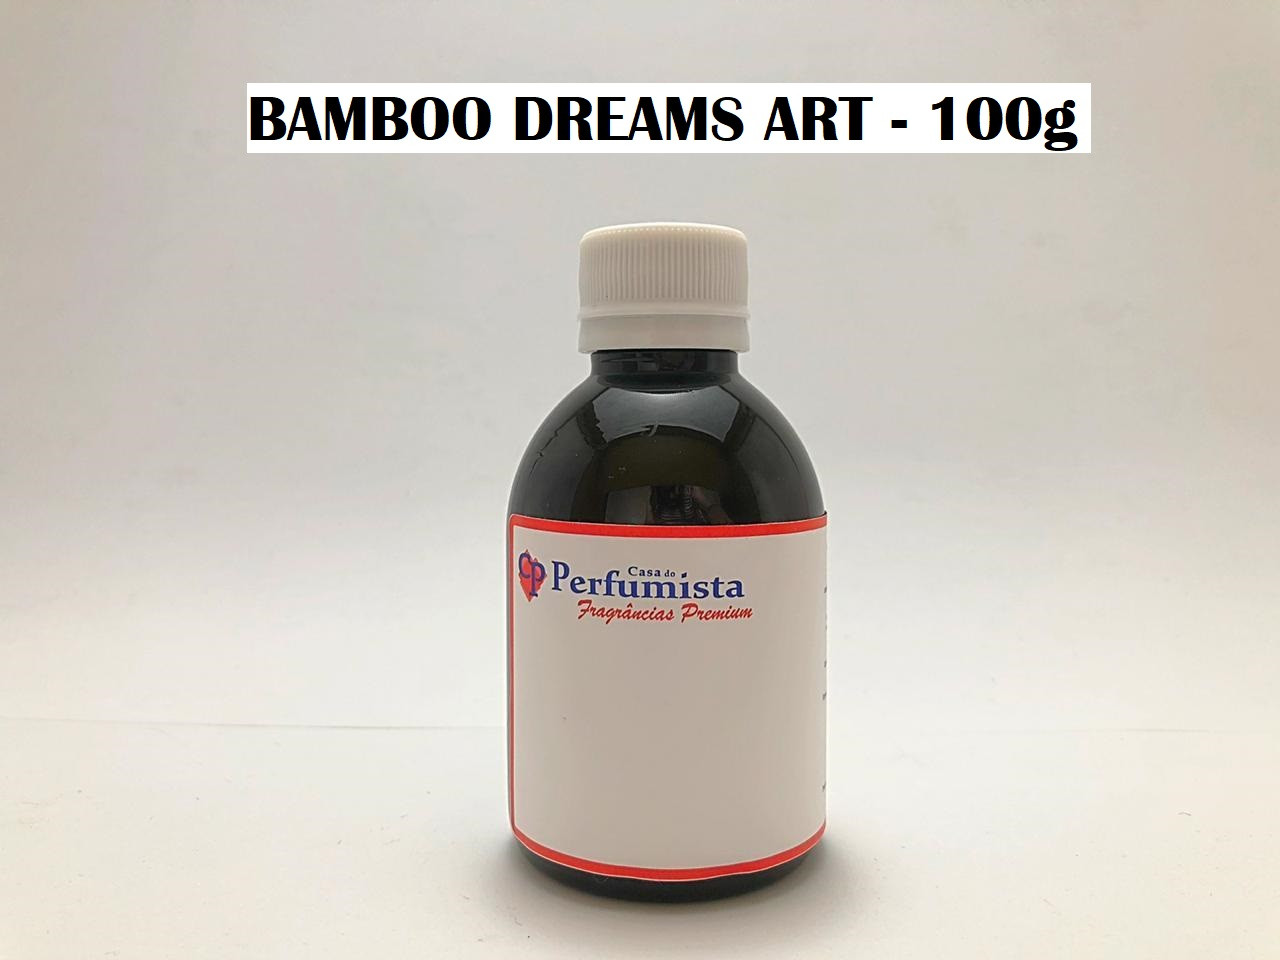 BAMBOO DREAMS ART - 100g - Inspiração: M. Martan 